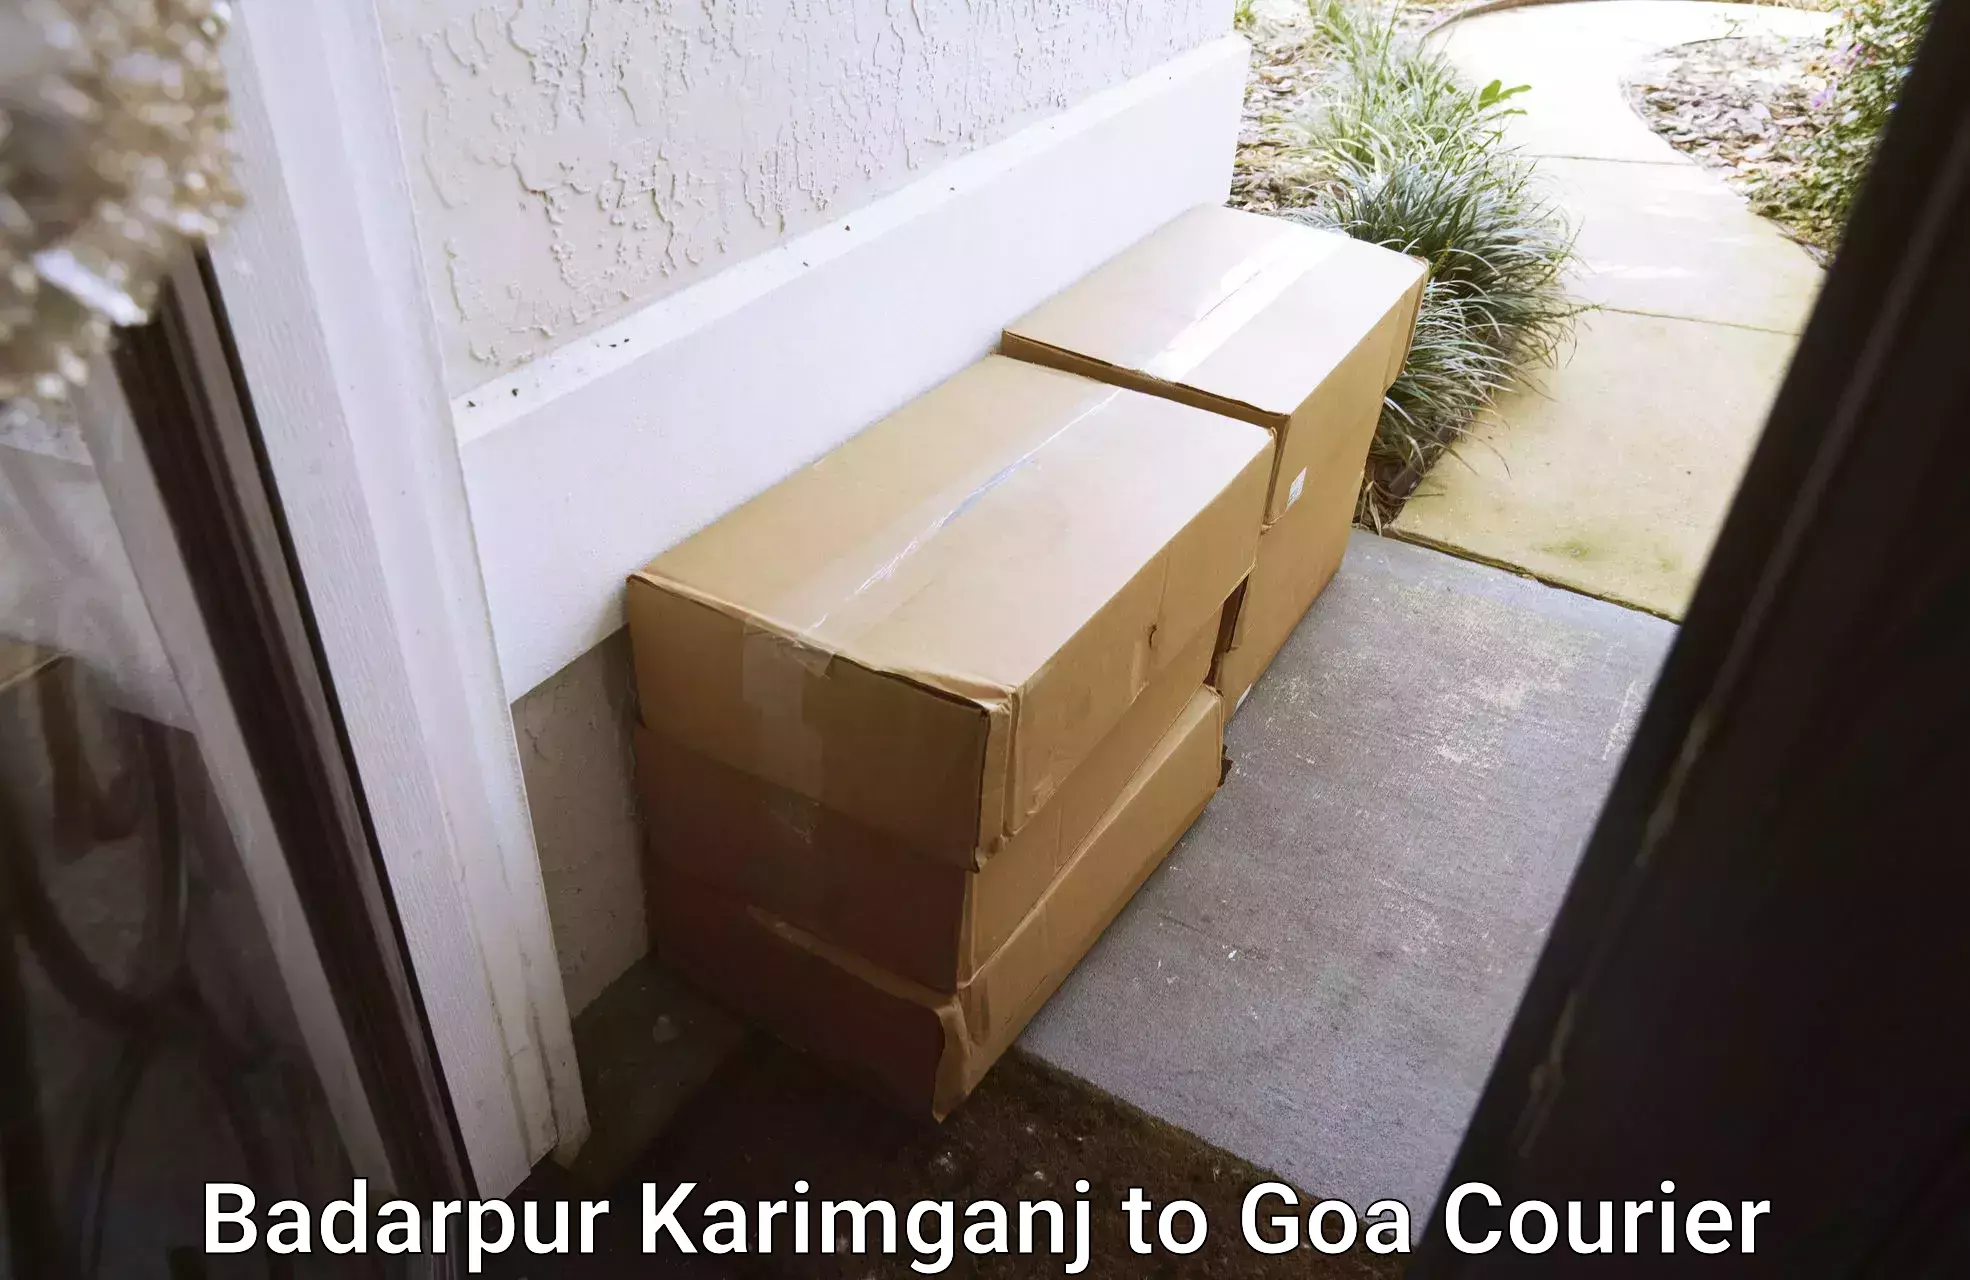 High-priority parcel service Badarpur Karimganj to Bardez